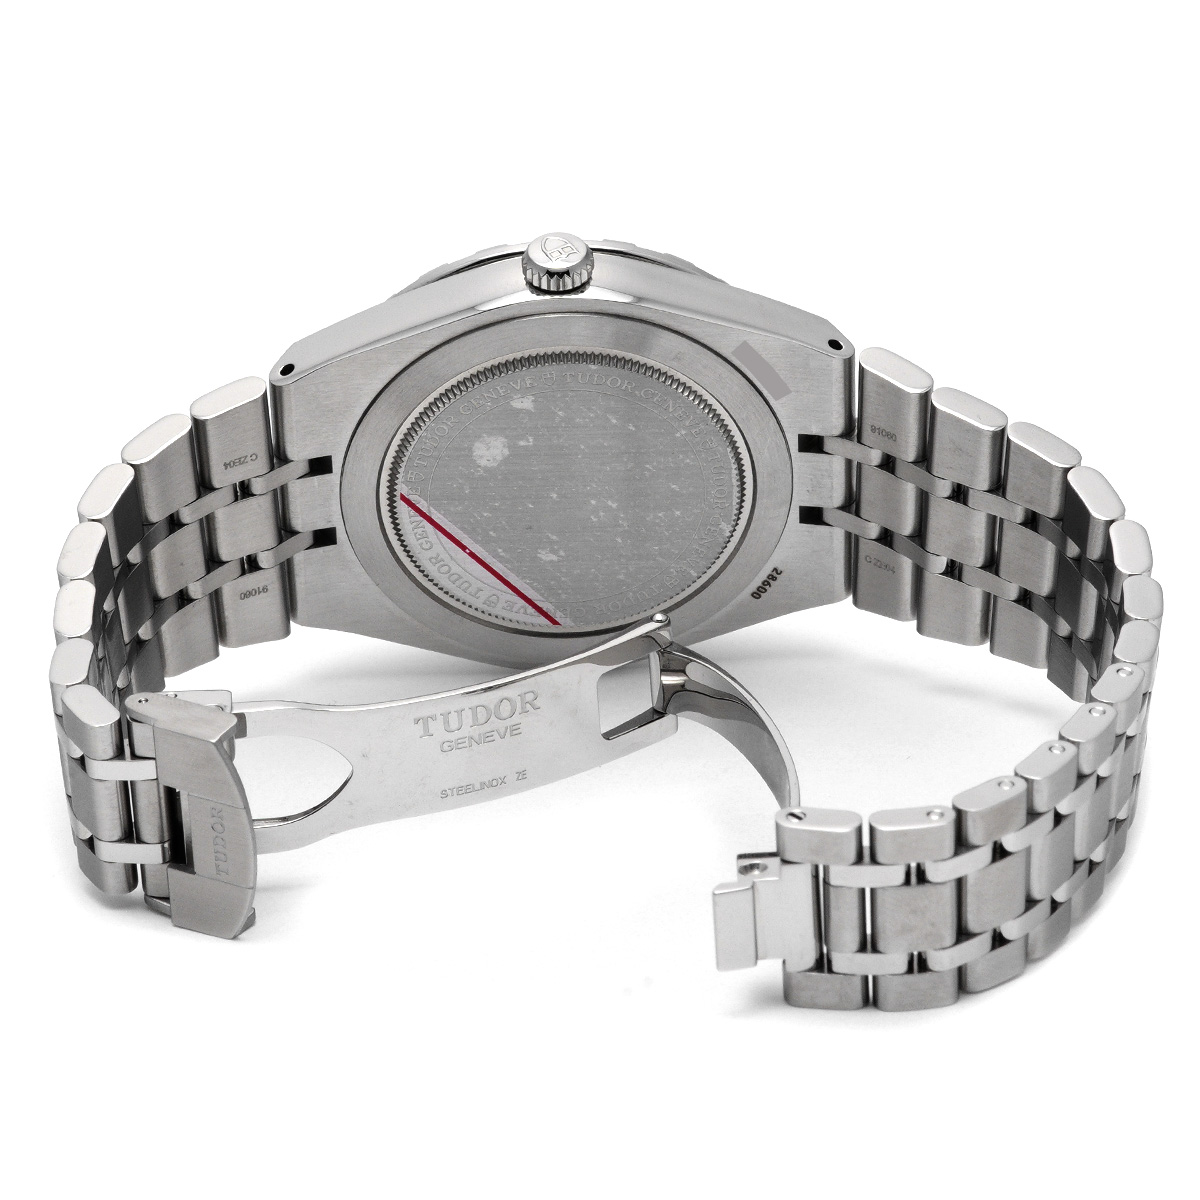 チューダー / チュードル / TUDOR ロイヤル 28600 ブラック メンズ 時計 【中古】【wristwatch】